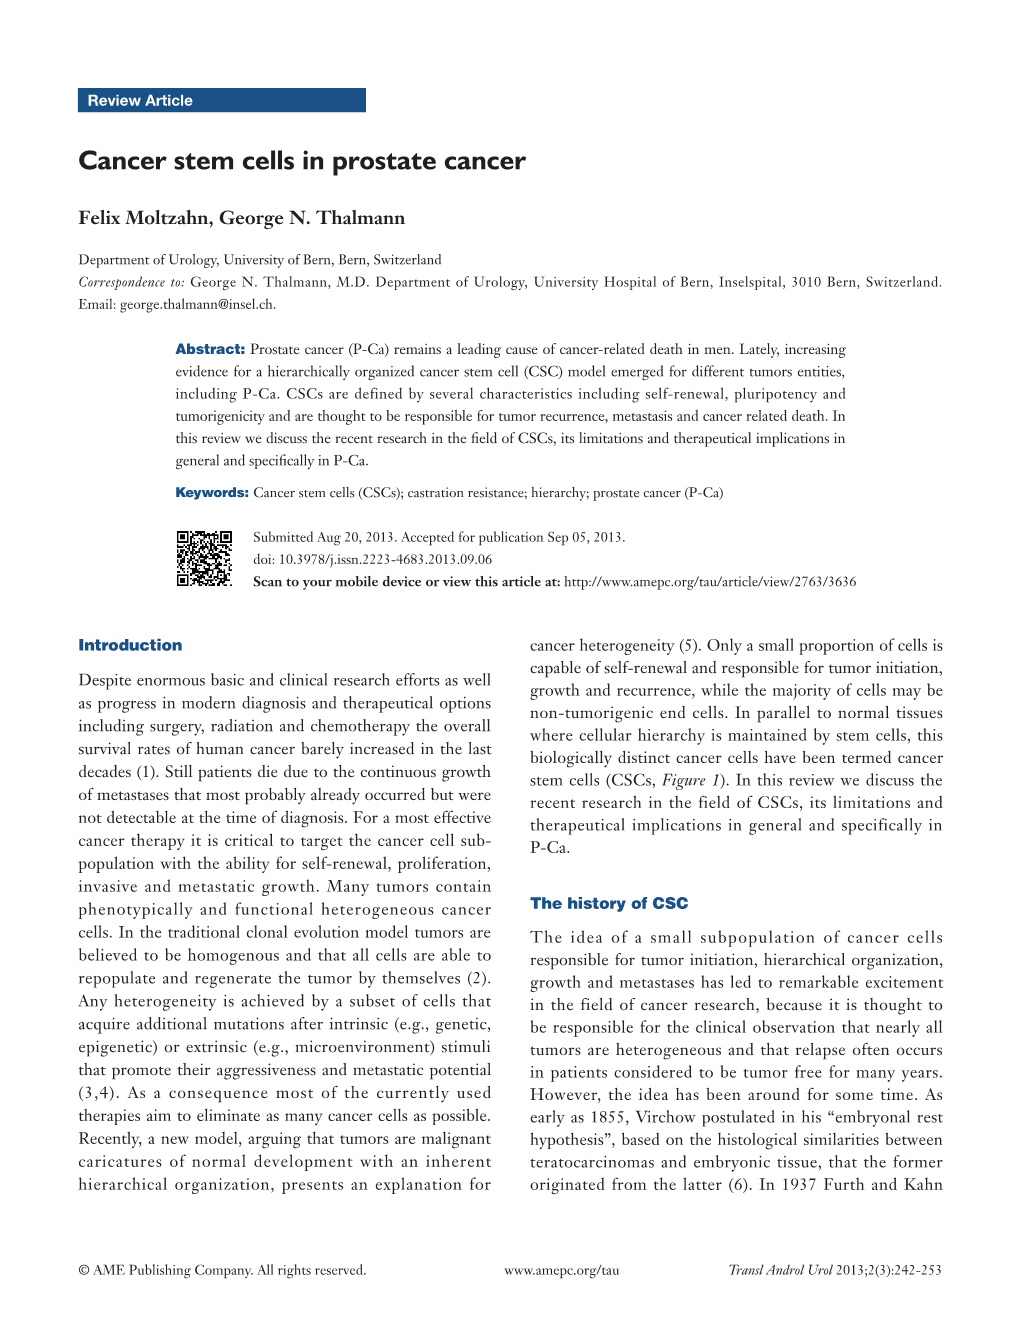 Cancer Stem Cells in Prostate Cancer